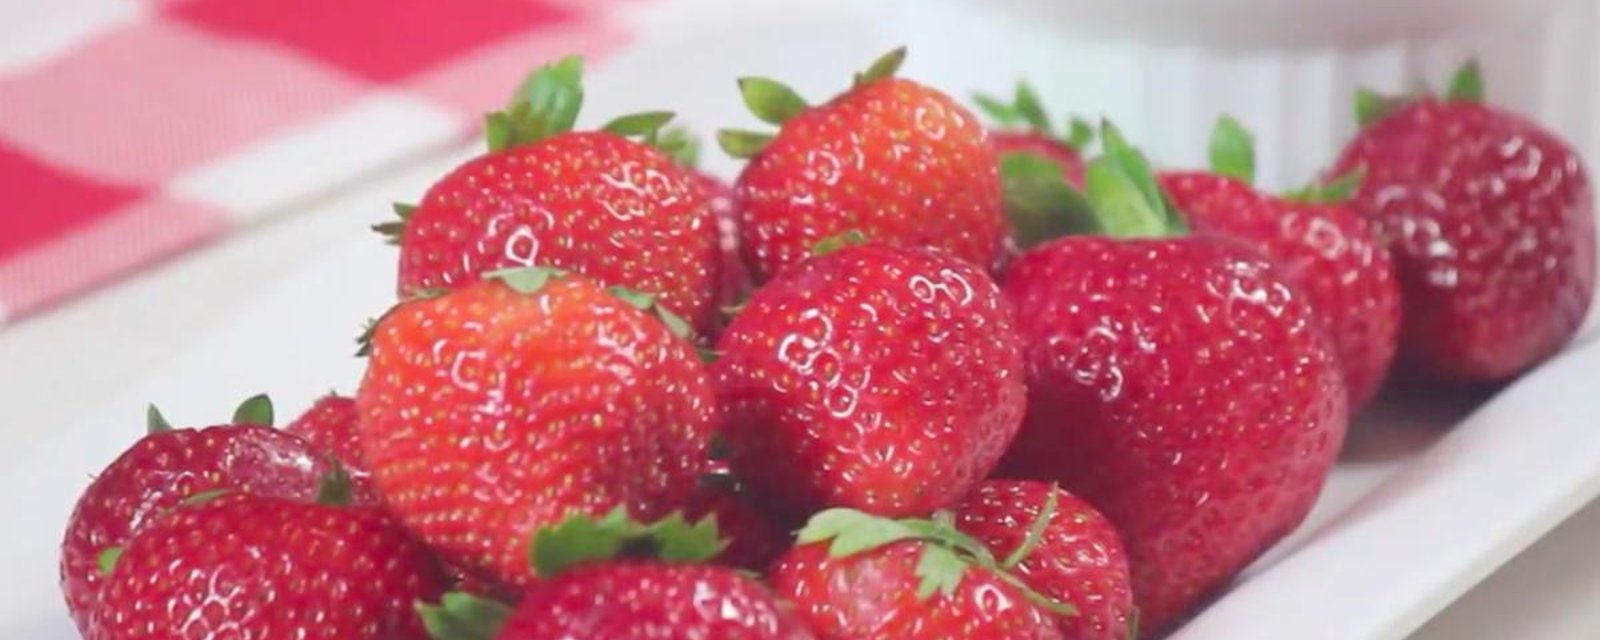 L'astuce facile pour garder les fraises fraîches au frigo pendant des semaines